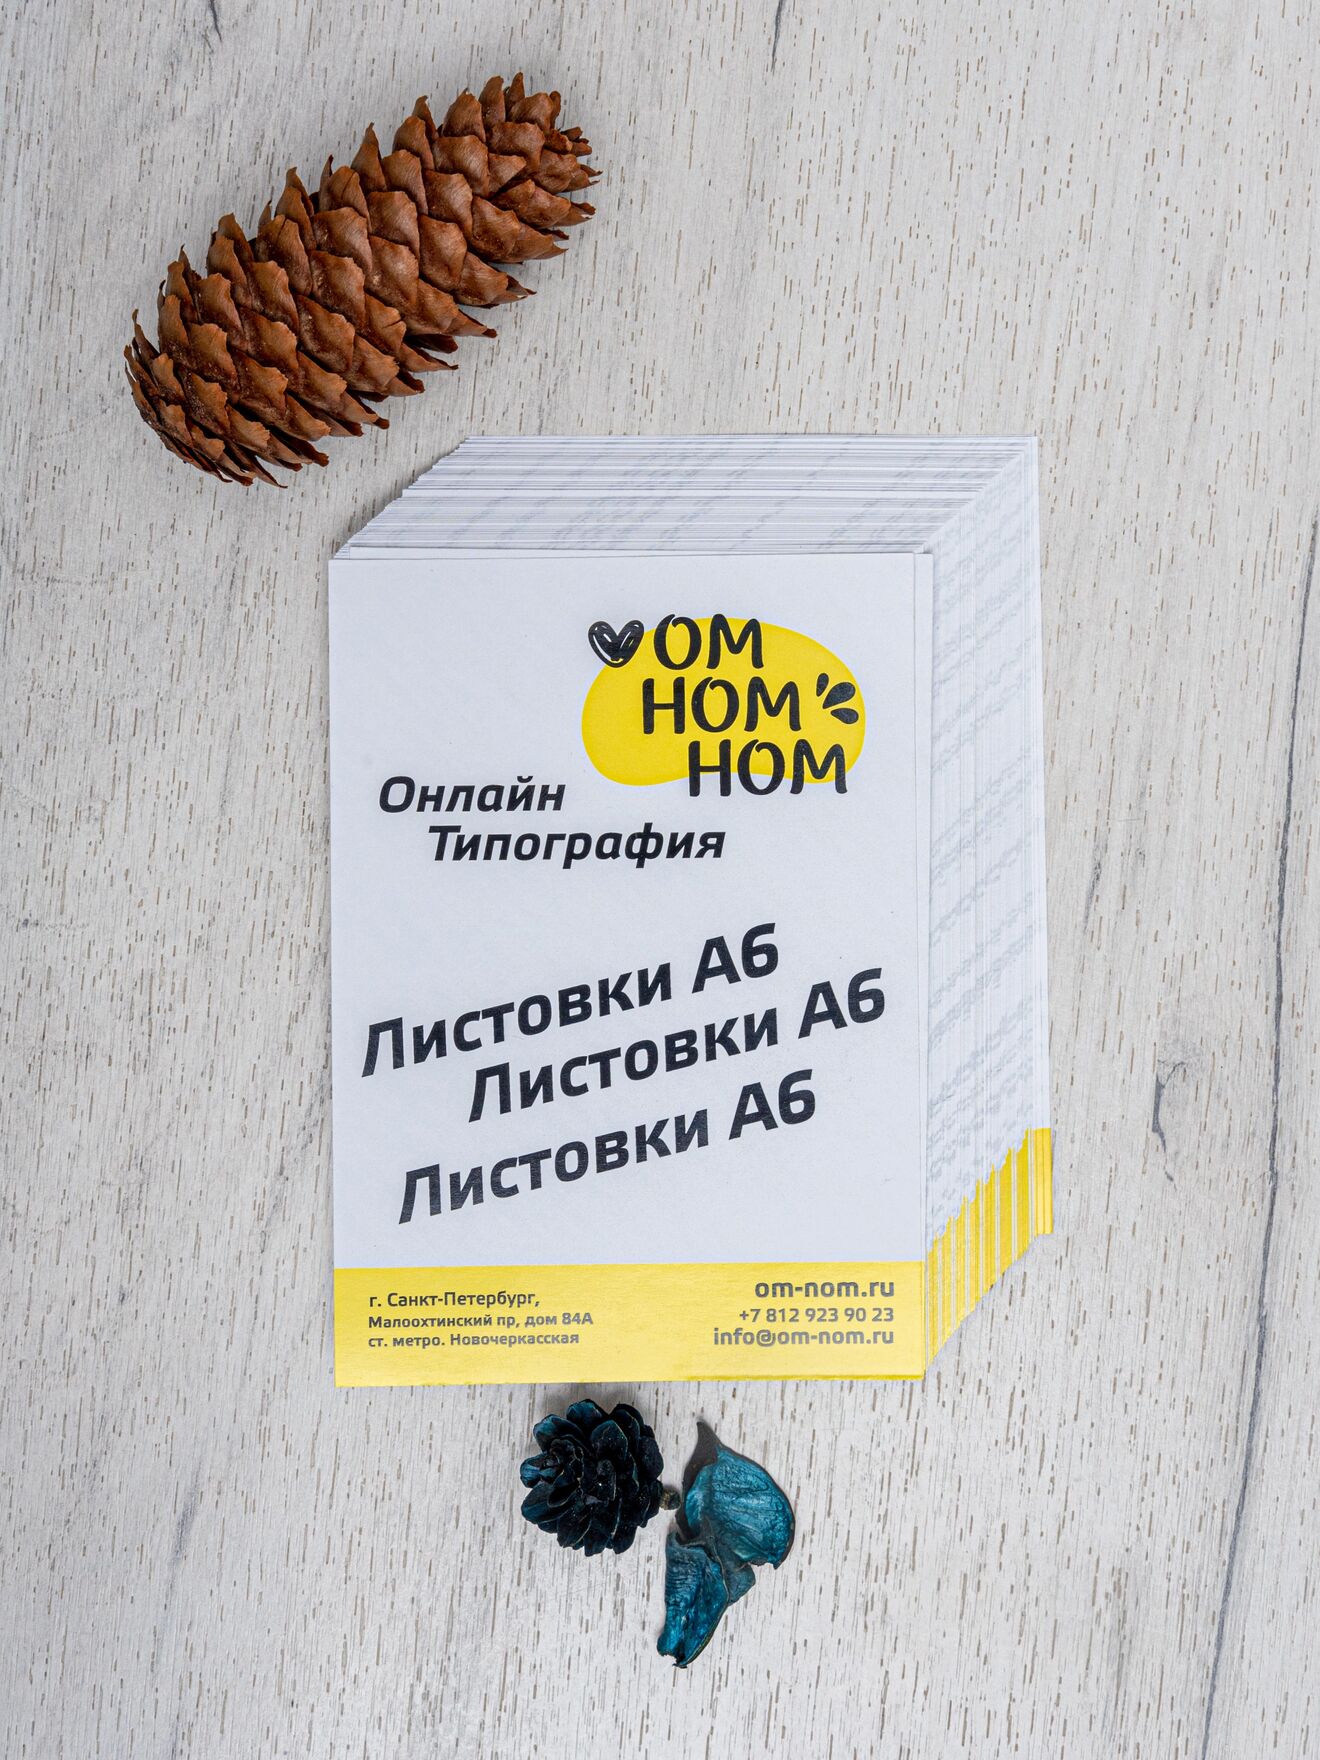 Рекламные листовки с акционными предложениями для вашей компании - заказать печать в Санкт-Петербурге